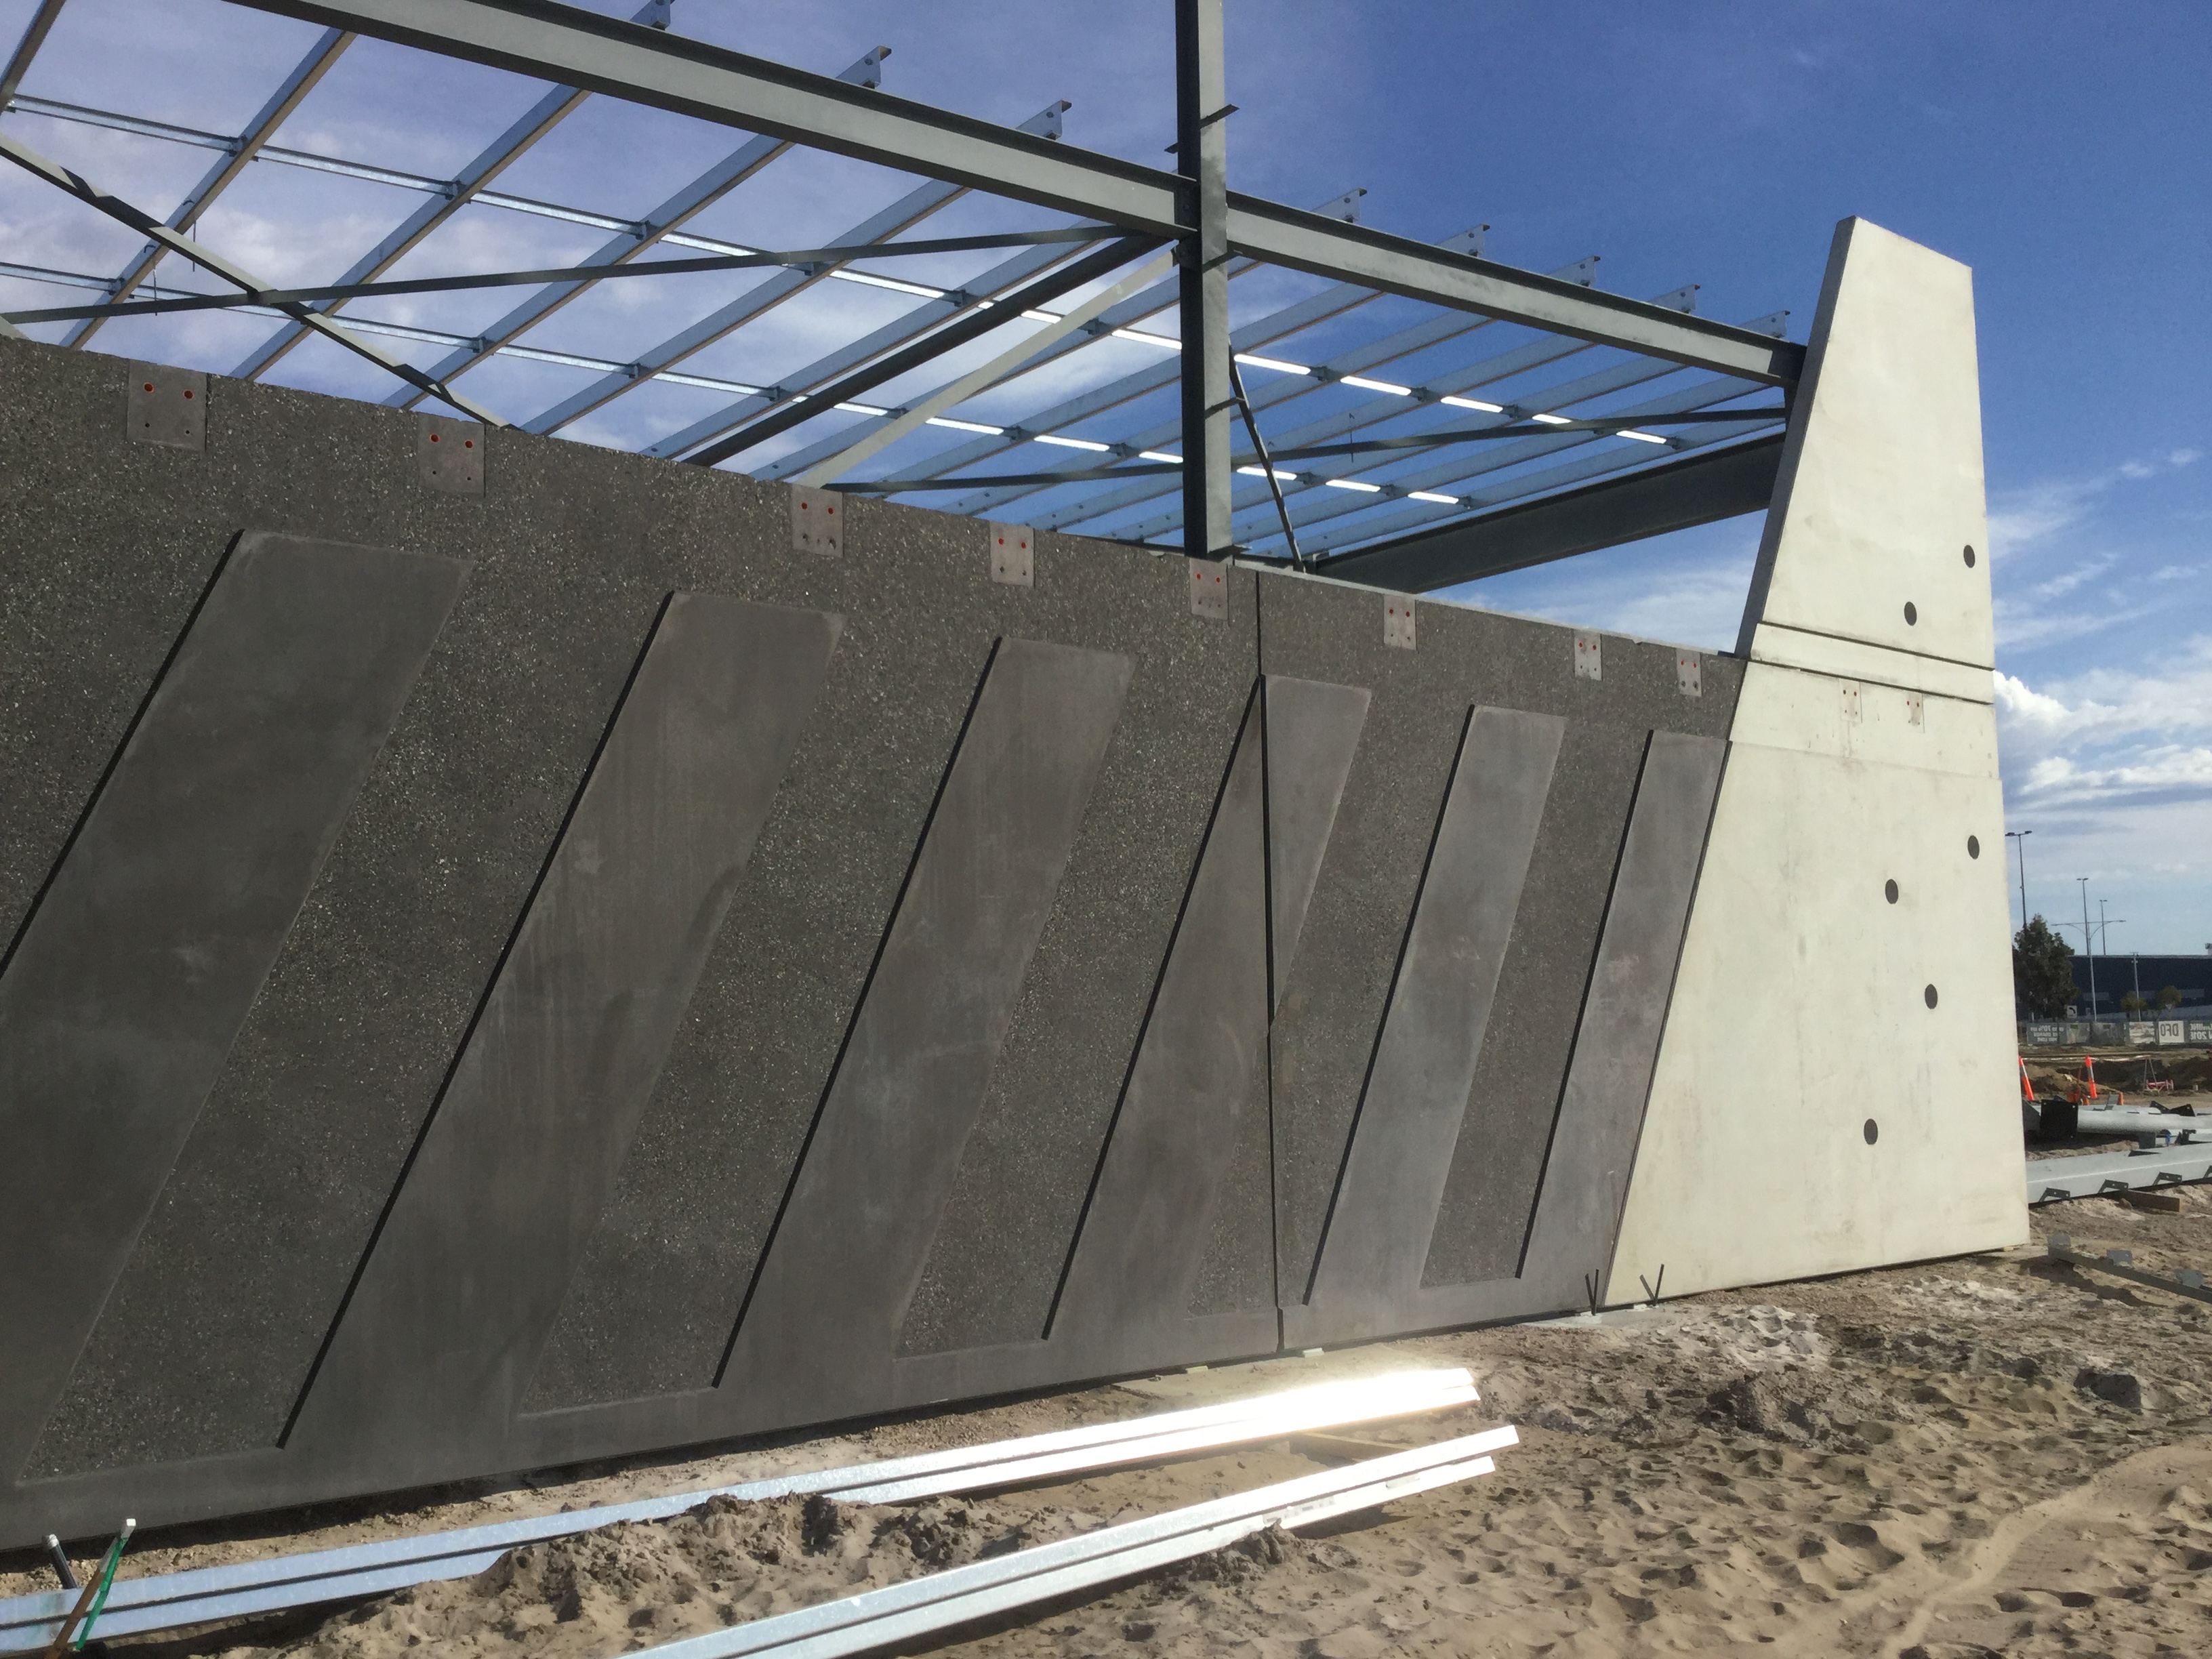 Concrete Moulds for DFO, Perth Airport | CNC Routers Australia